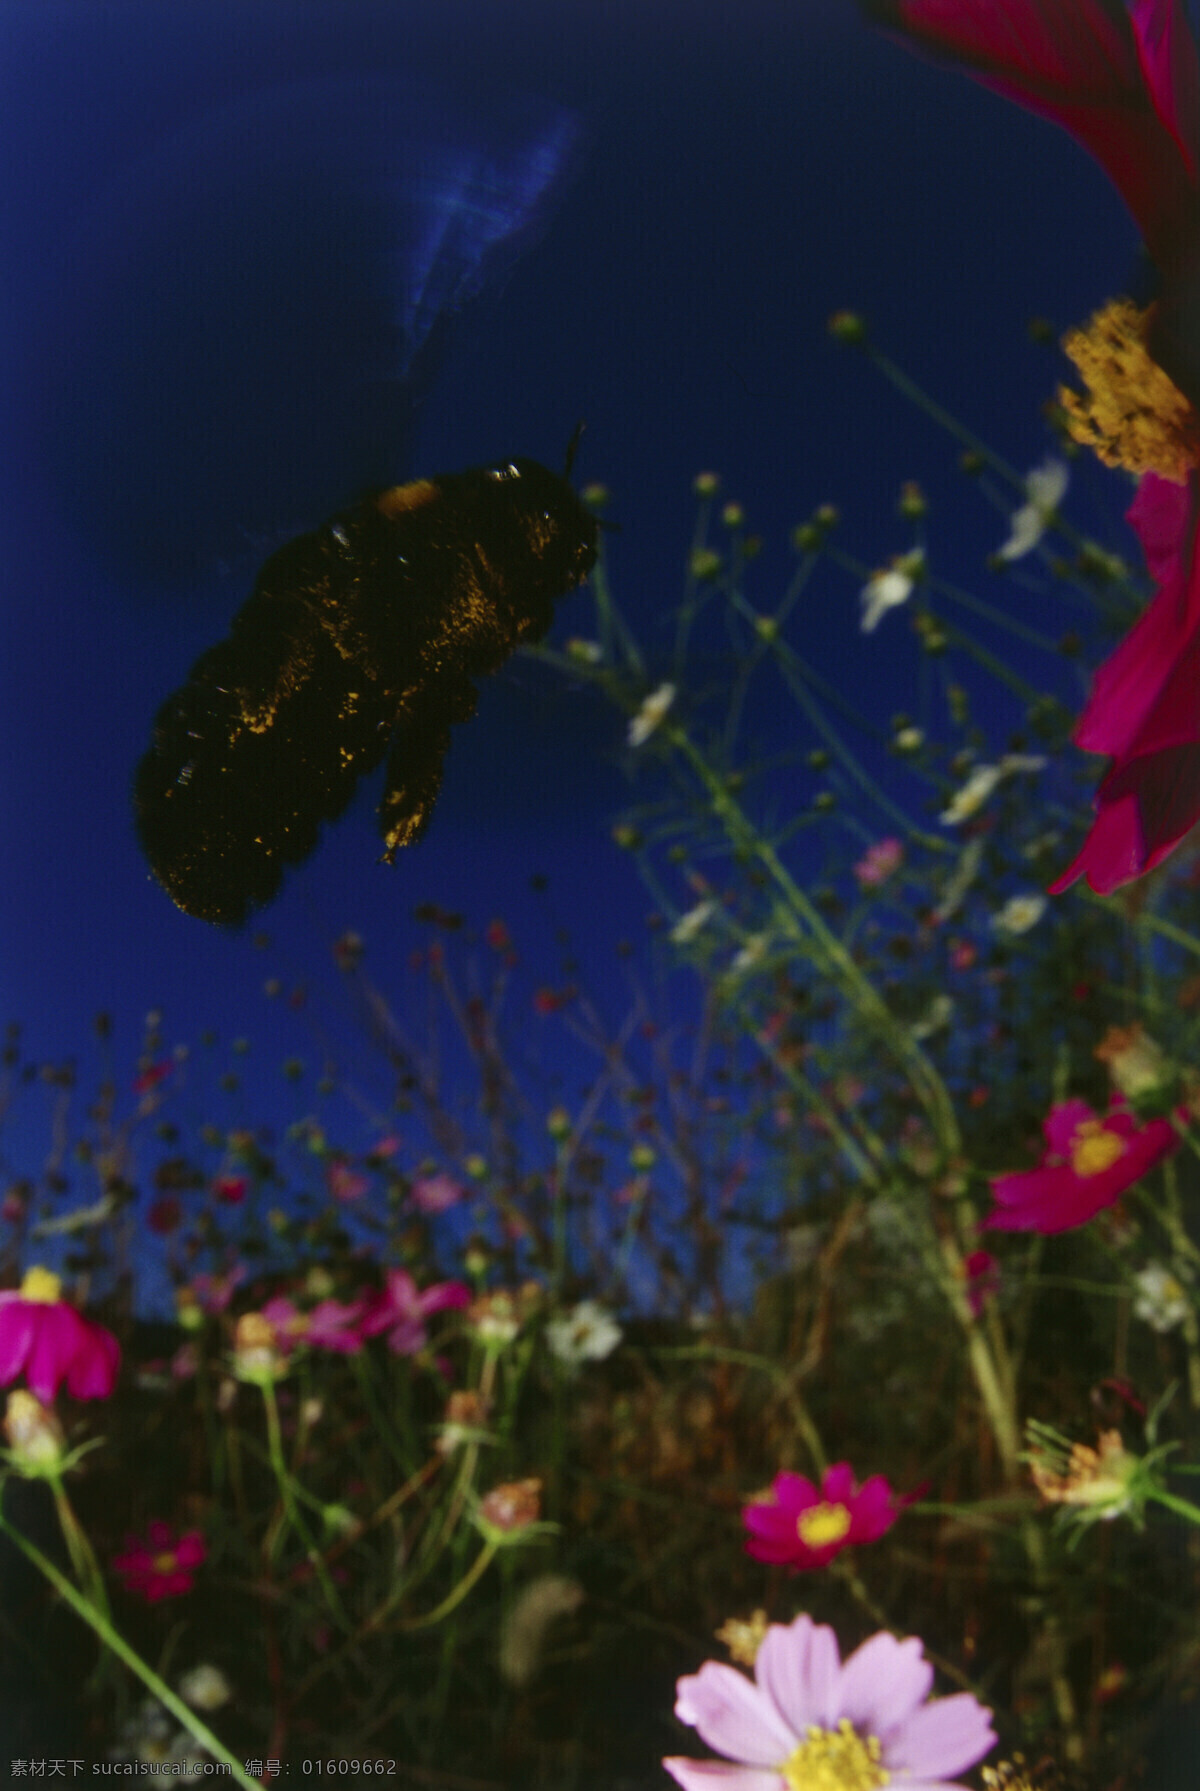 花丛 中 飞来 飞去 小 蜜蜂 小蜜蜂 采蜜 飞 飞翔 美丽鲜花 花朵 动物世界 昆虫世界 花草树木 生态环境 生物世界 野外 自然界 自然生物 自然生态 高清图片 自然 植物 户外